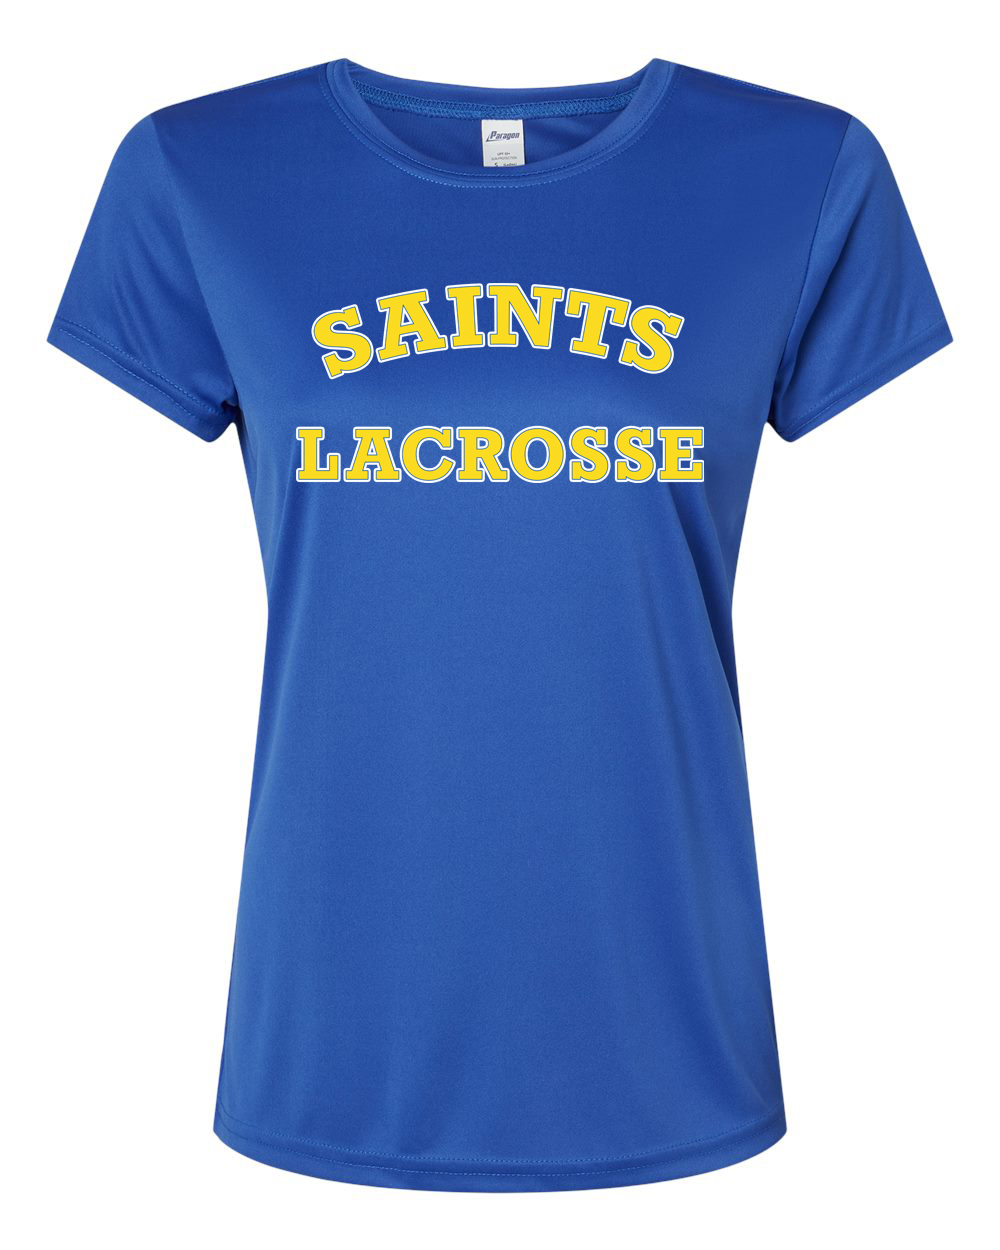 Saints Lacrosse Women’s Performance shirt